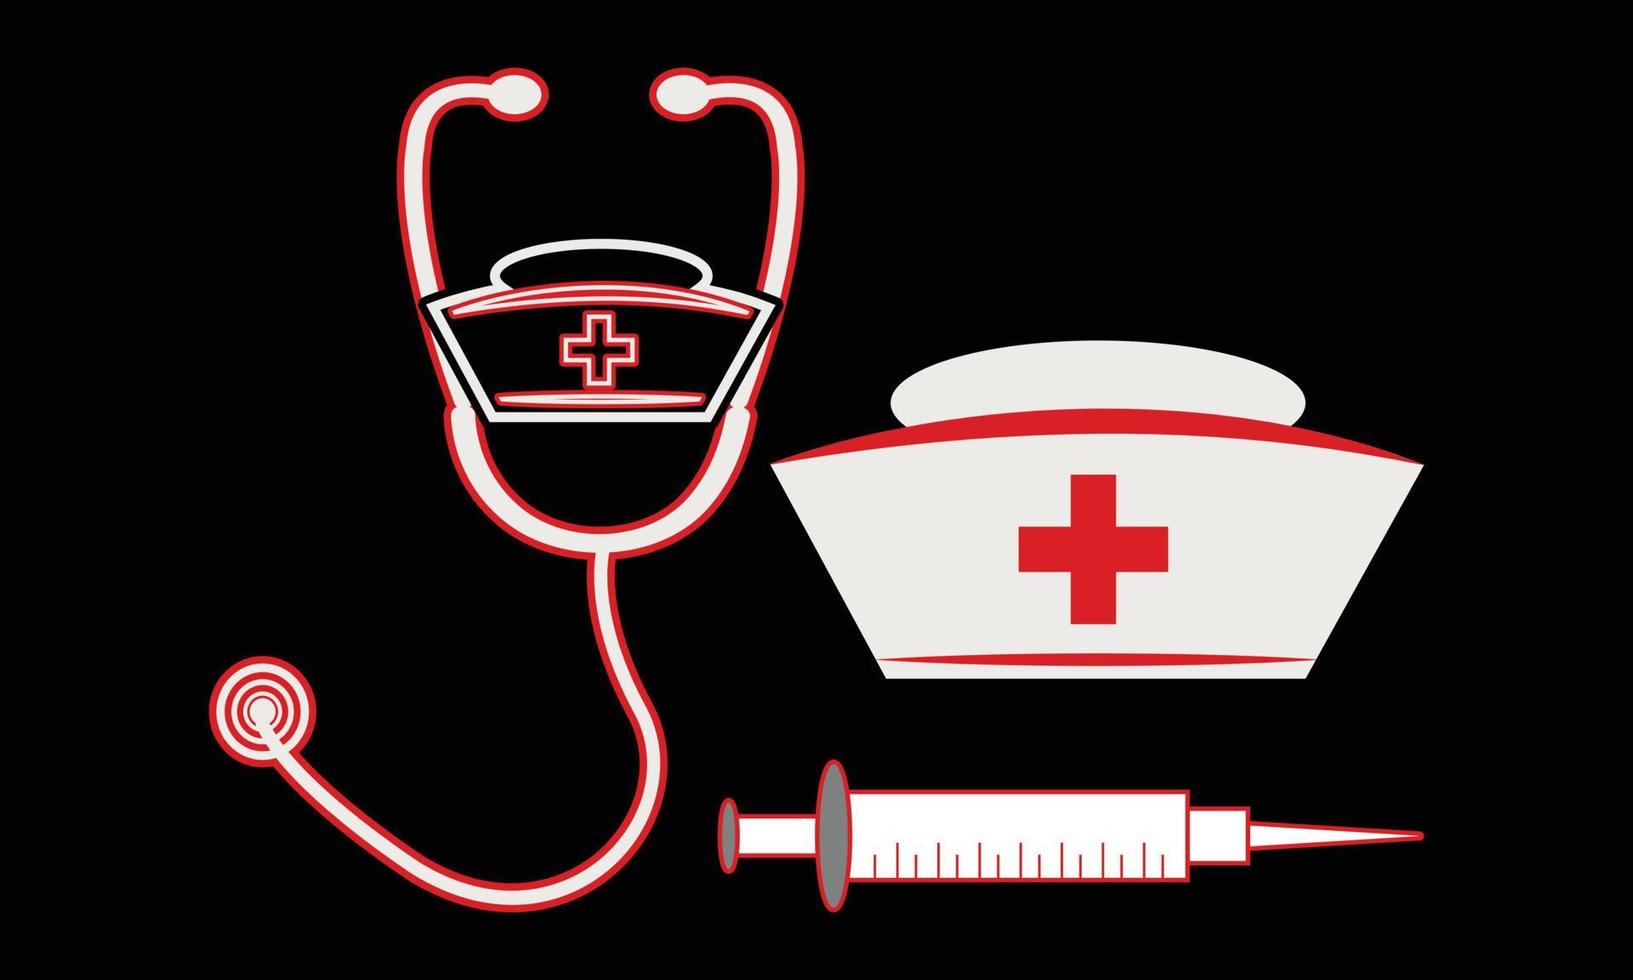 Nursing tools SVG Illustrations Design. vector